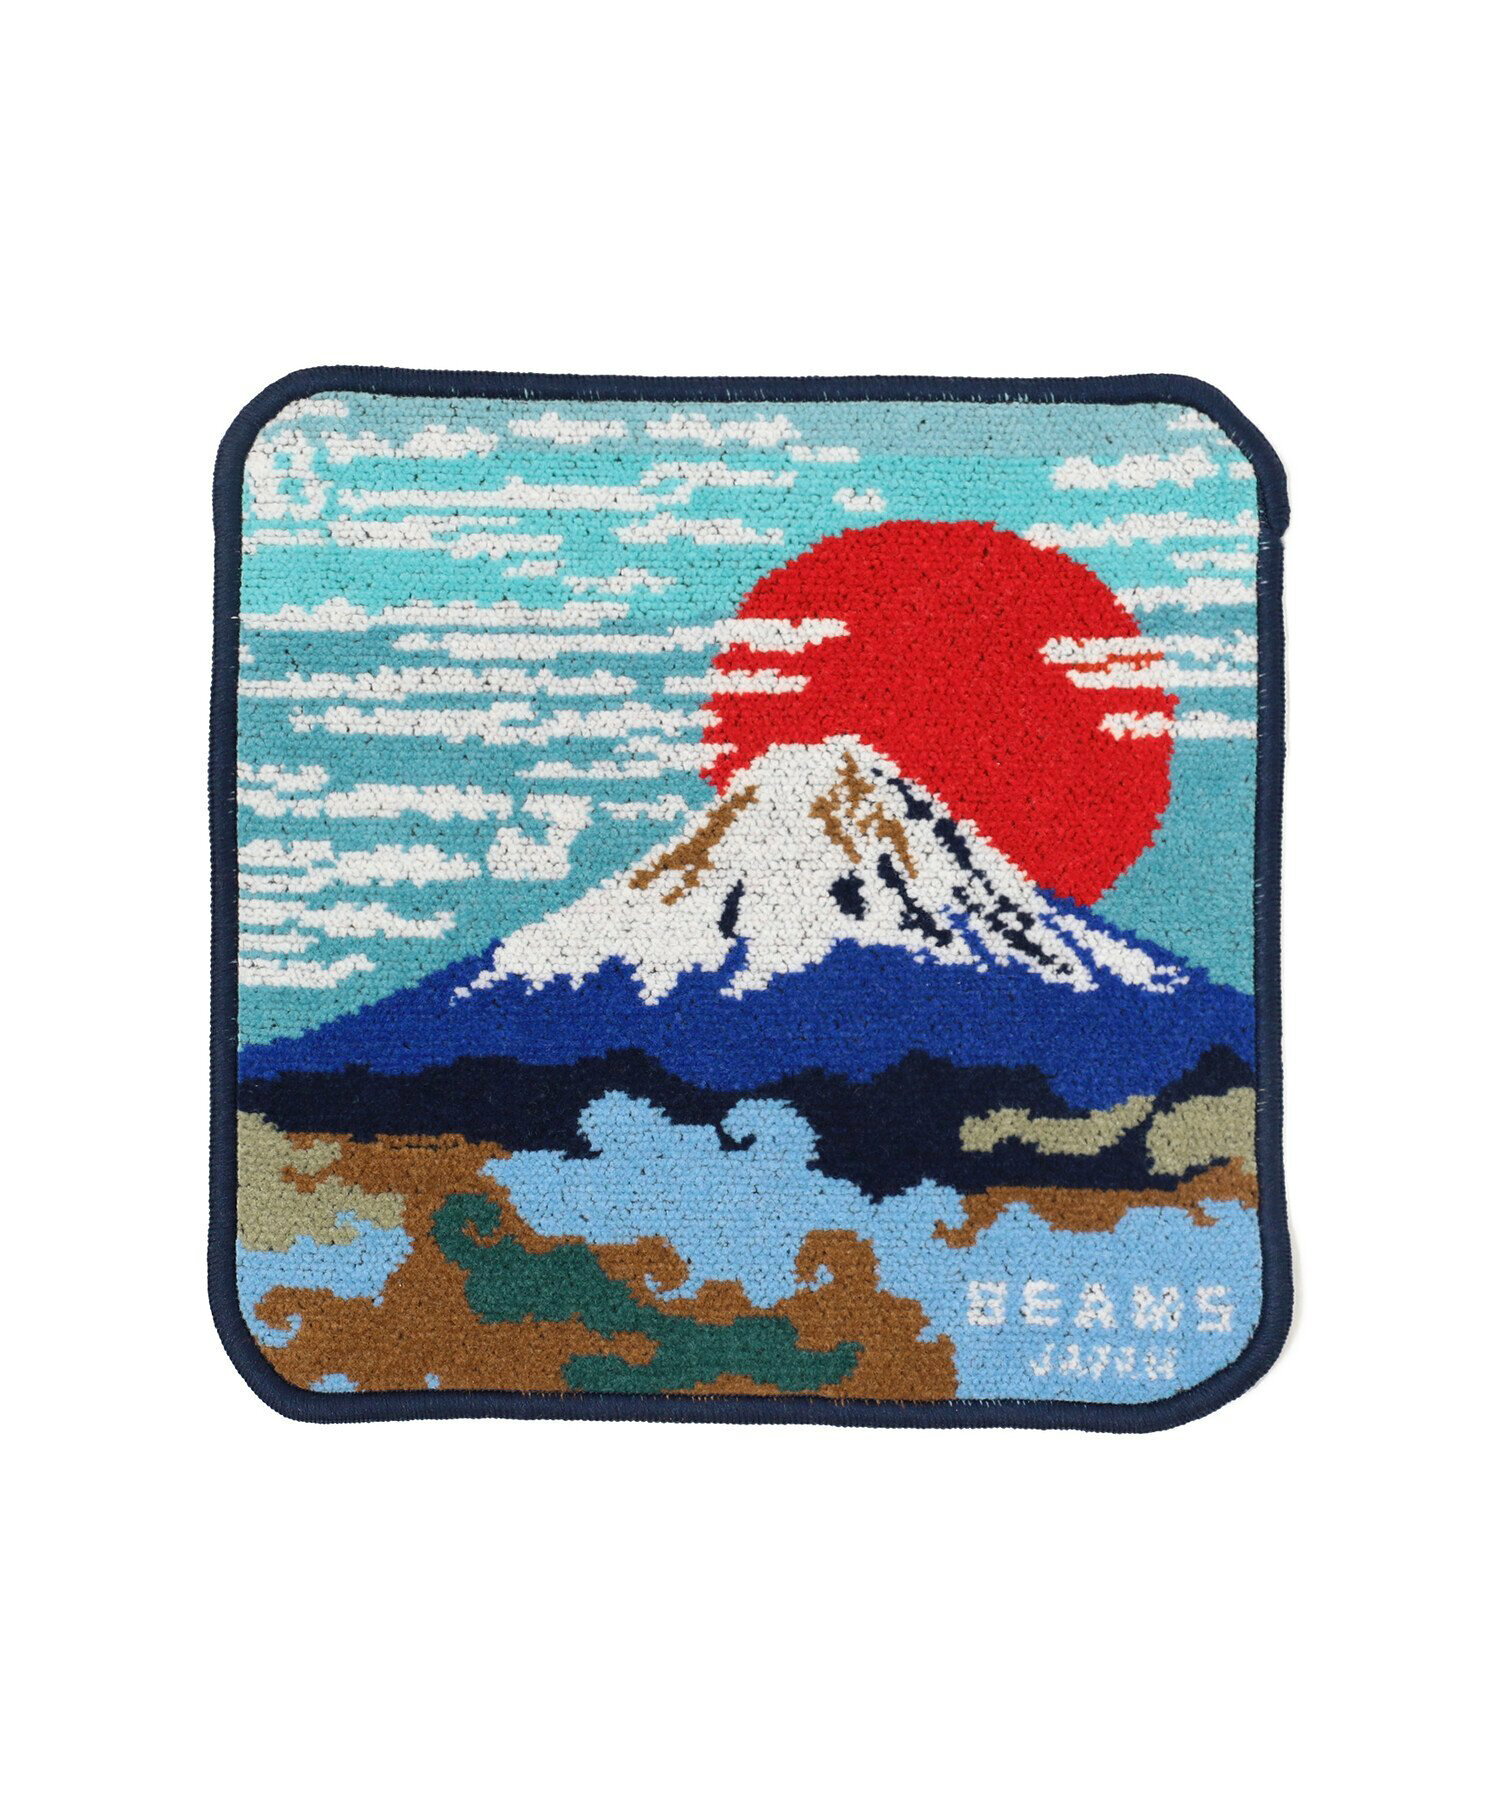 BEAMS JAPAN / 別注 富士山 シェニール織 ハンカチ タオル